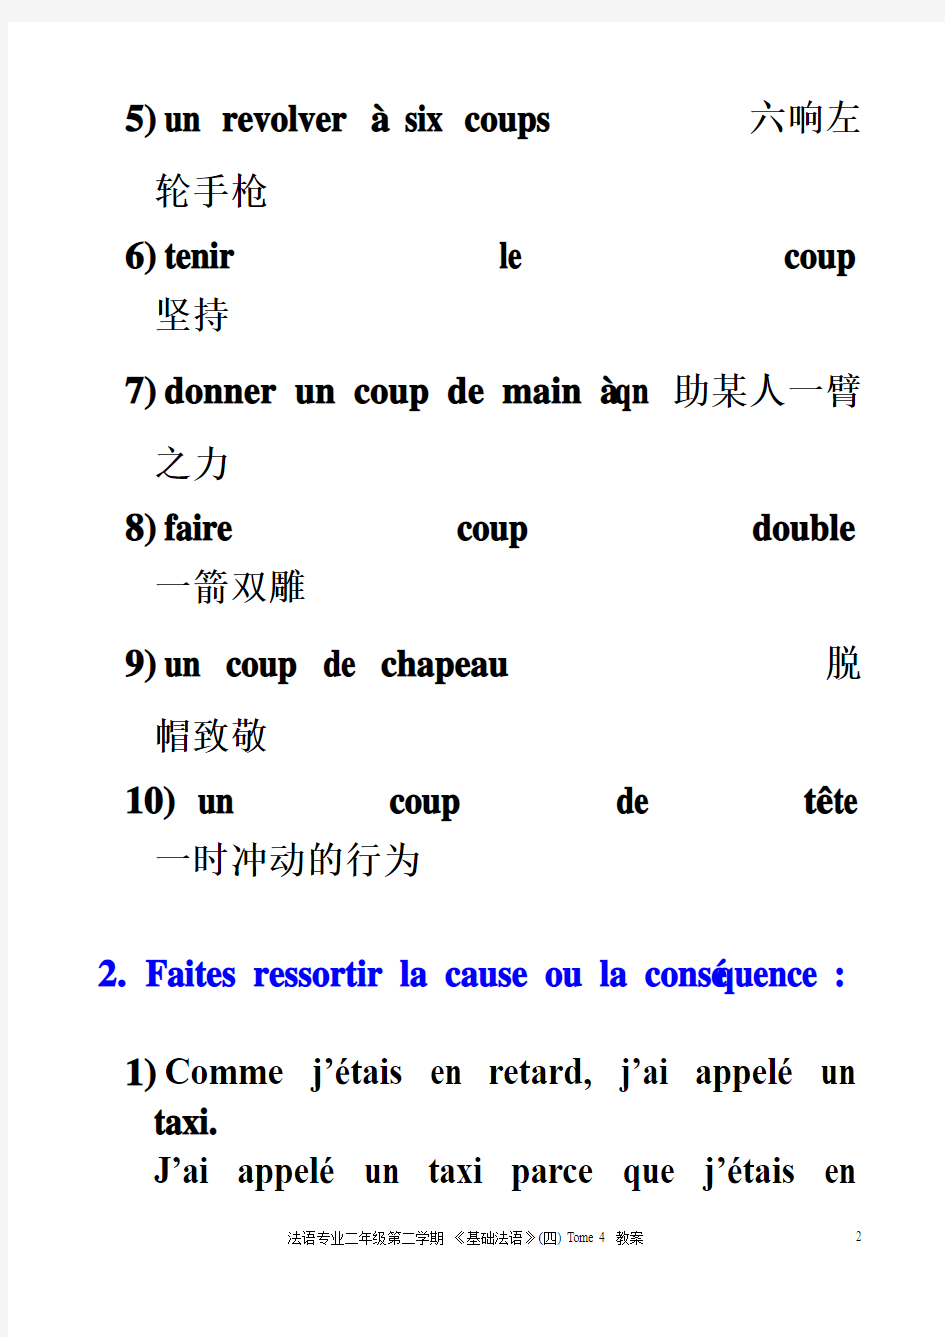 【基础法语】(四)08级1班二下《法语》第4册Lecon 7【练习参考答案】